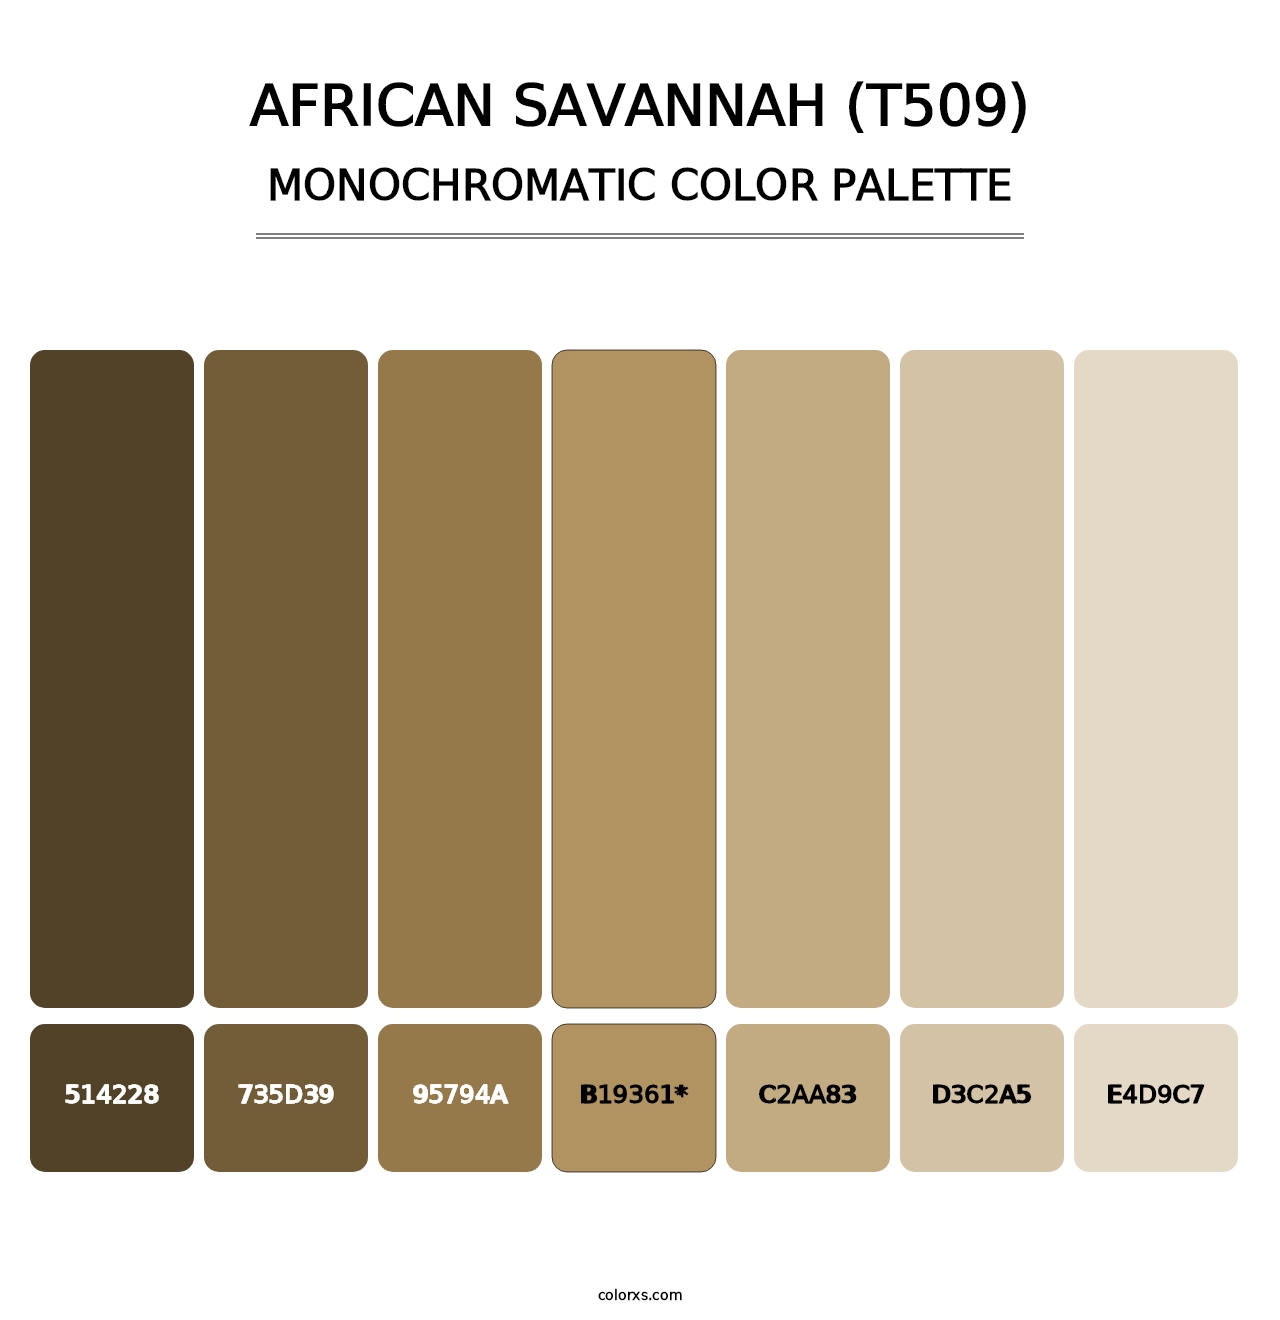 African Savannah (T509) - Monochromatic Color Palette